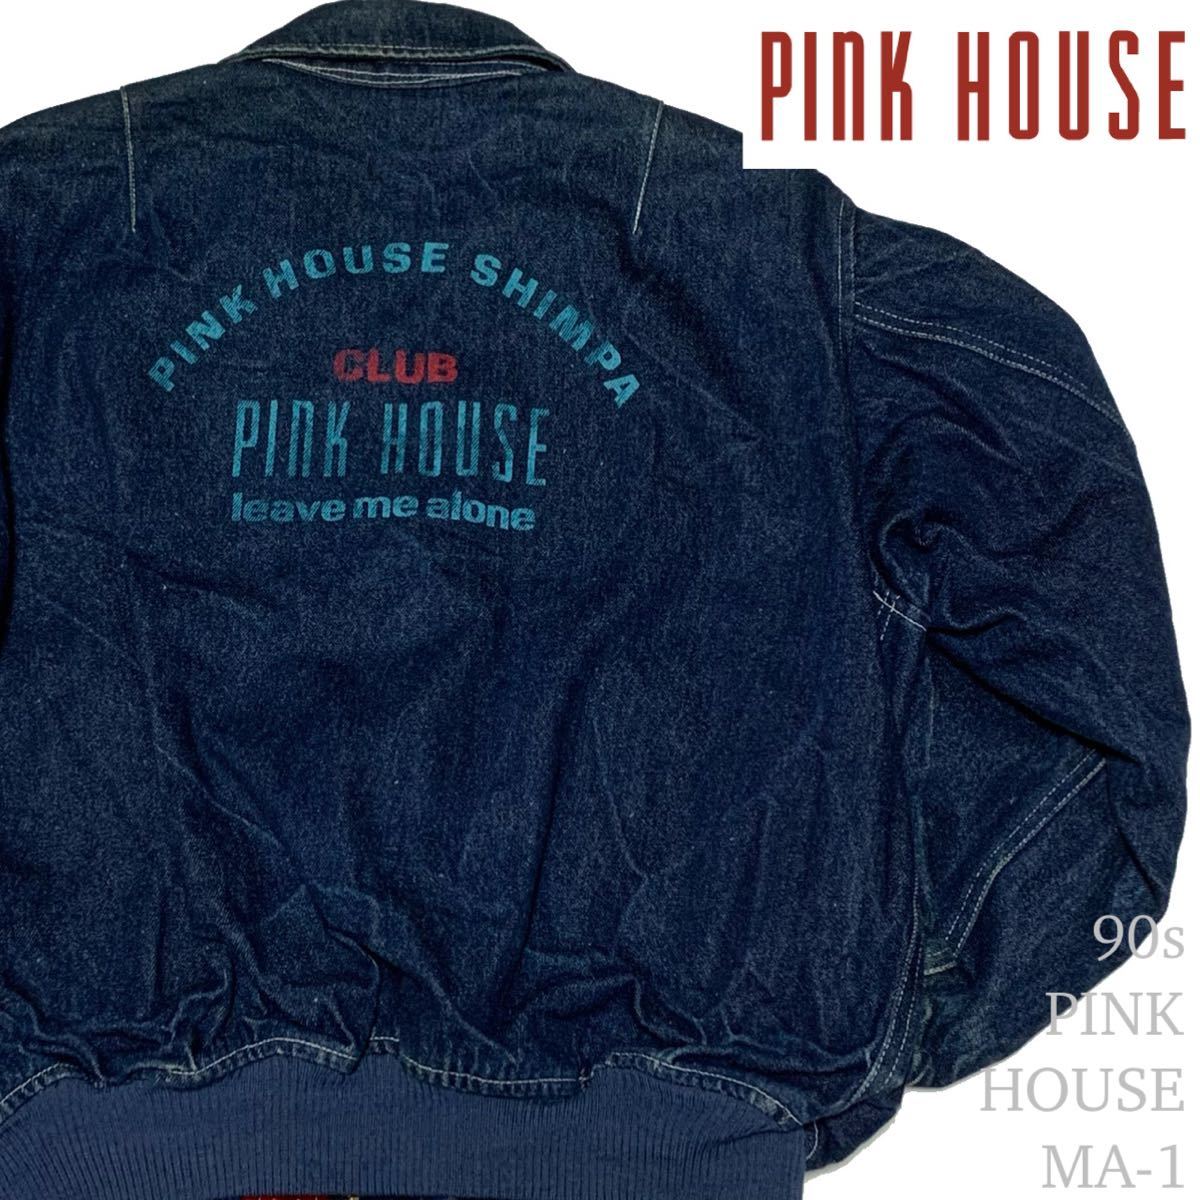 新製品情報も満載 デニムジャケット ピンクハウス HOUSE PINK 90's - G 